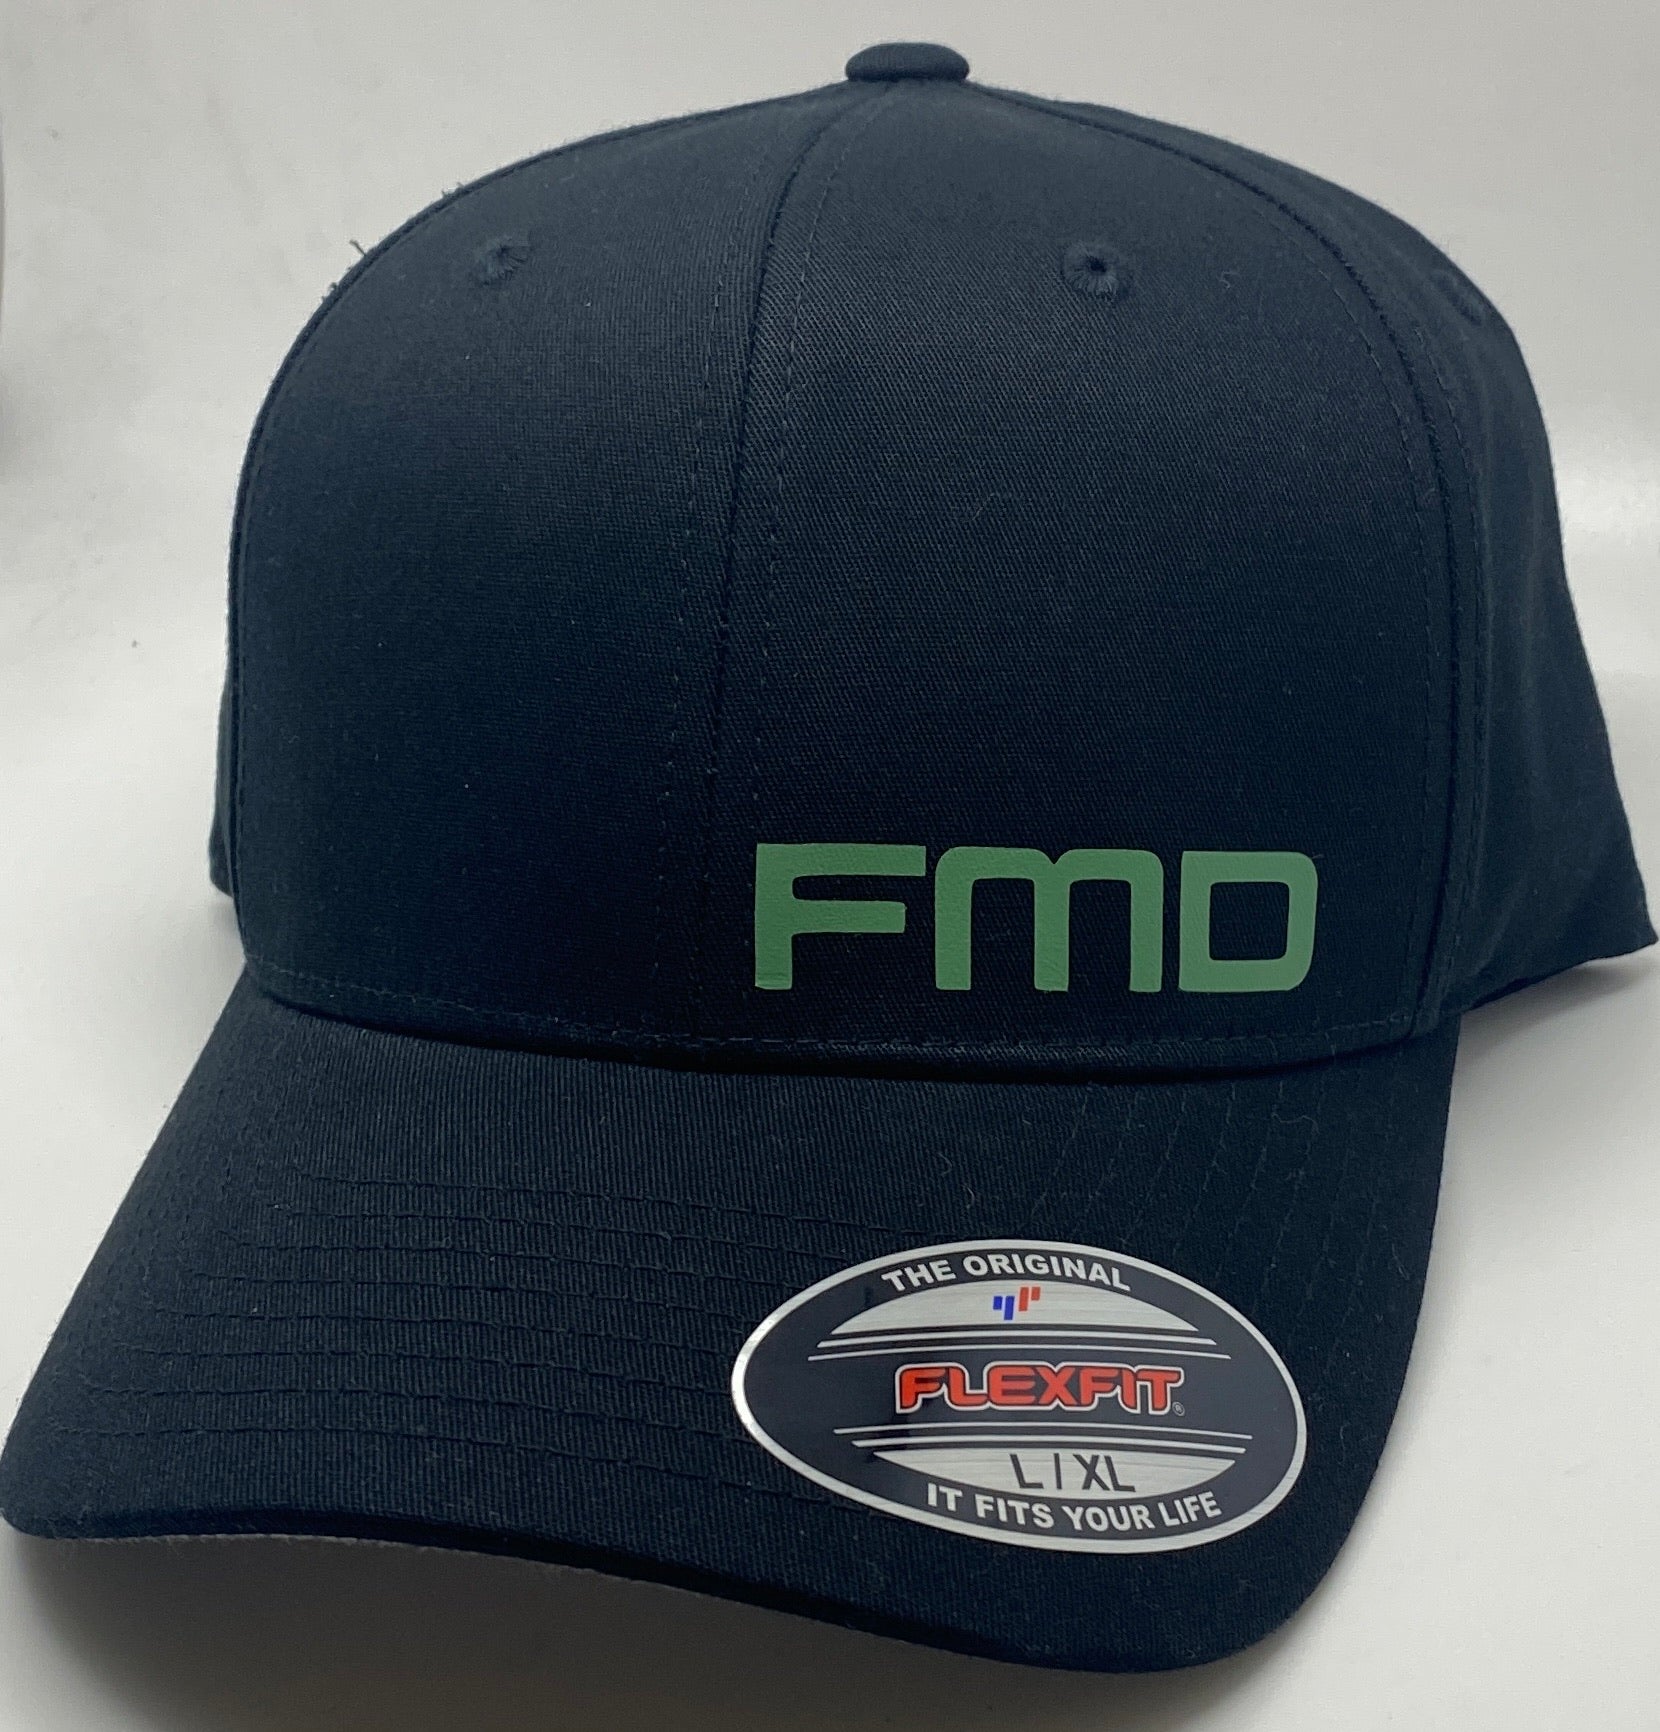 FMD men’s hats